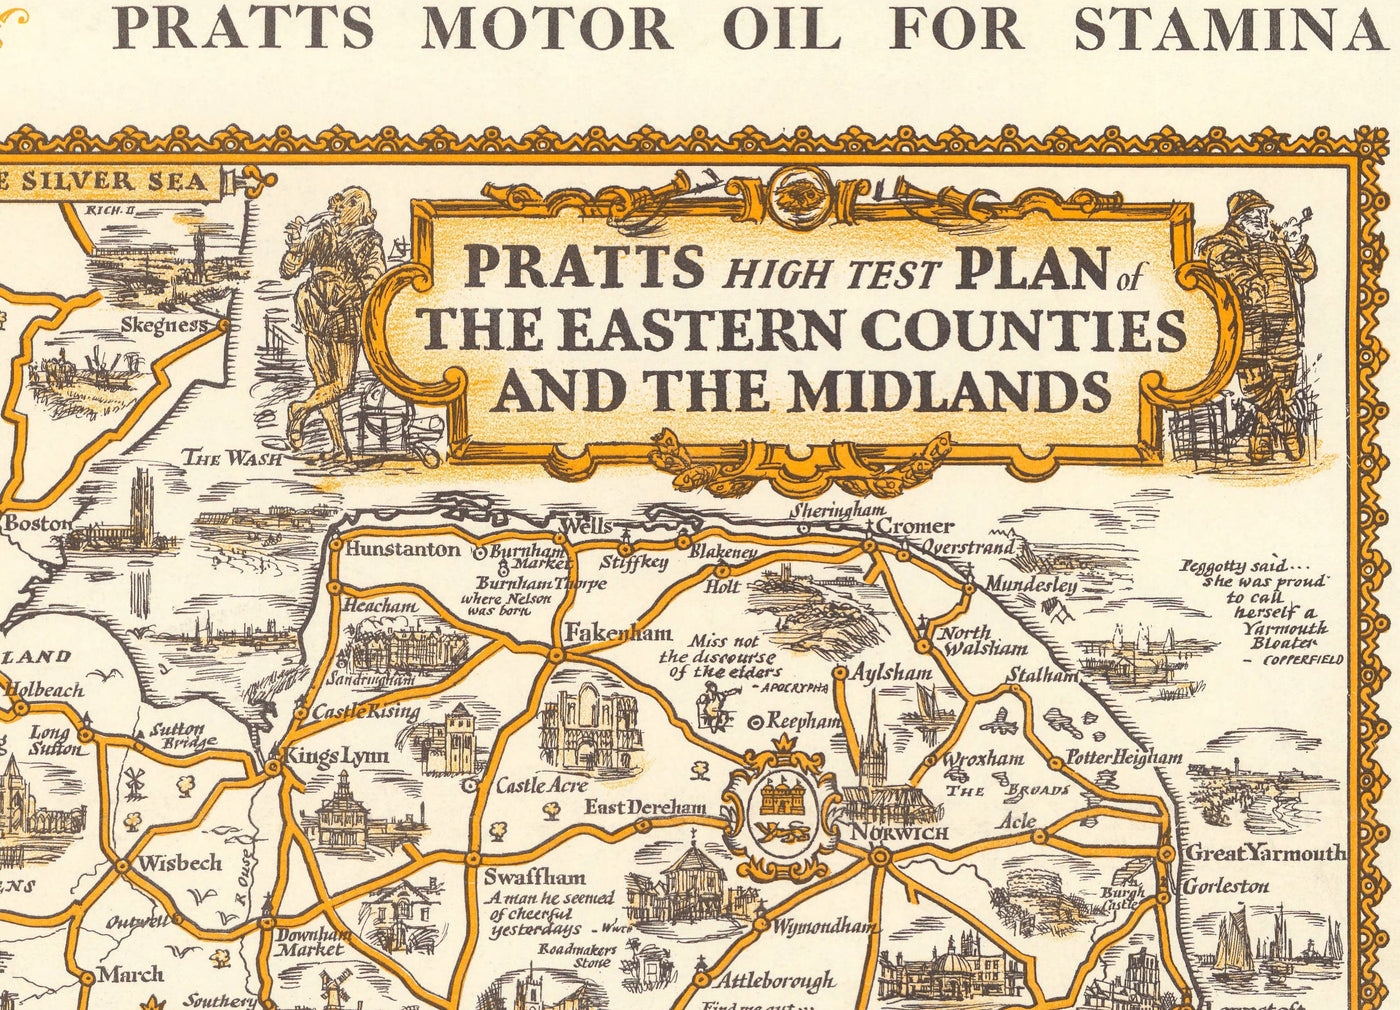 Pratts Hoher Testplan der Midlands 1932 - Essex, Oxford, Birmingham - Alte Vintage Motoring Car Map - Esso, Standardöl